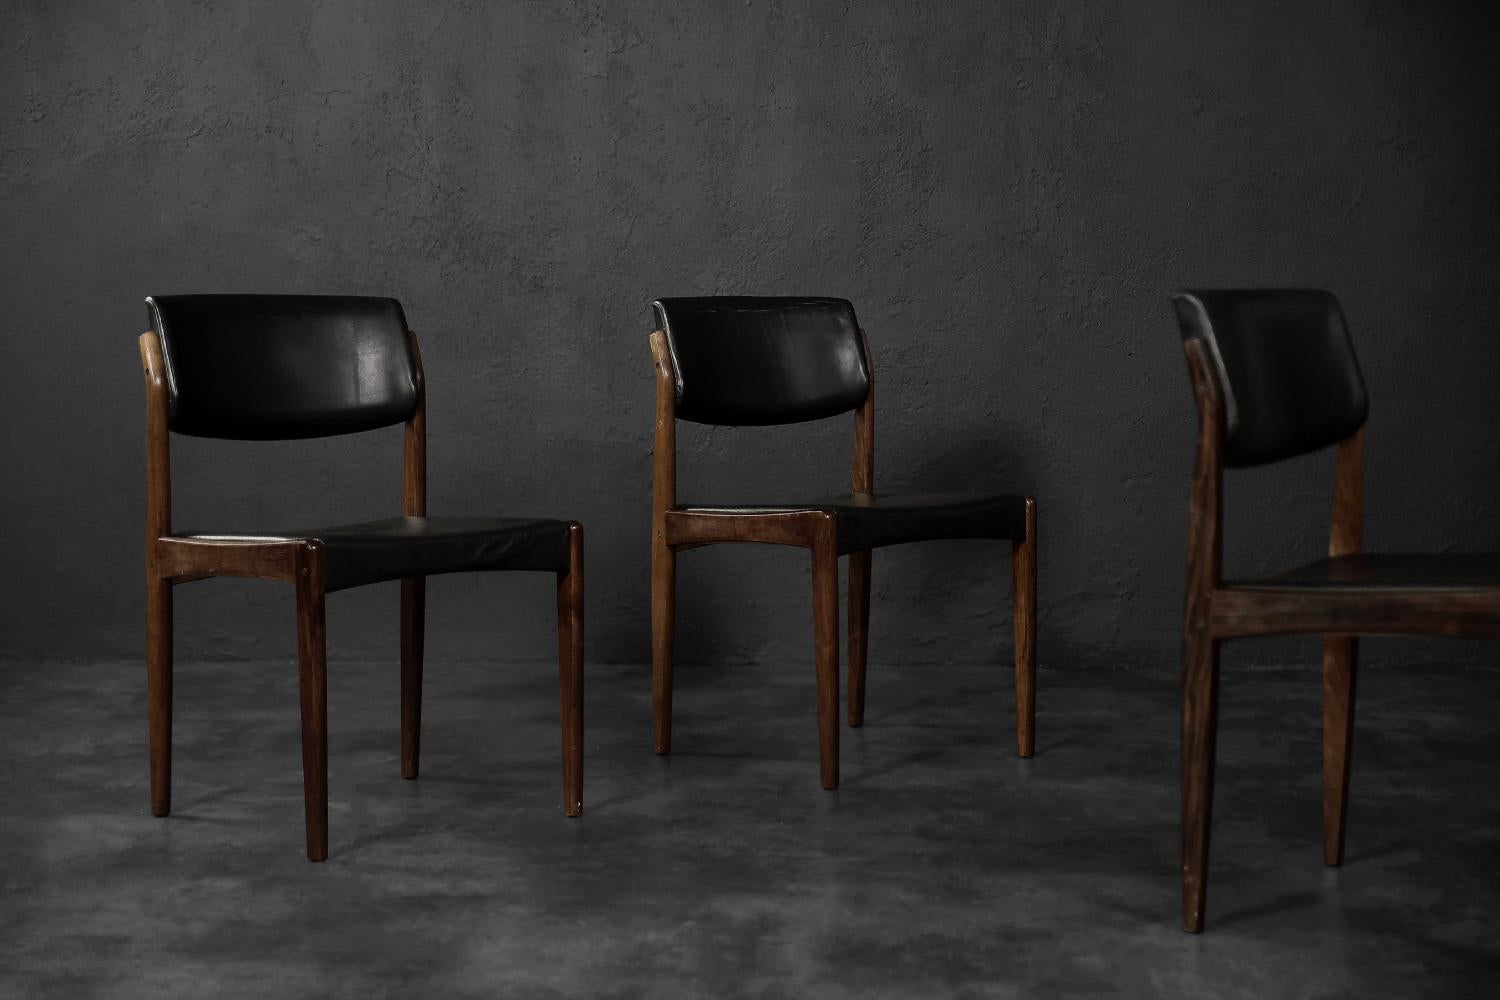 Cet ensemble de trois chaises modernistes a été conçu par H.W. Klein pour le fabricant danois Bramin dans les années 1960. Le cadre des chaises est en bois de rose brun foncé. Le dossier était légèrement incliné. L'assise est encastrée dans le cadre